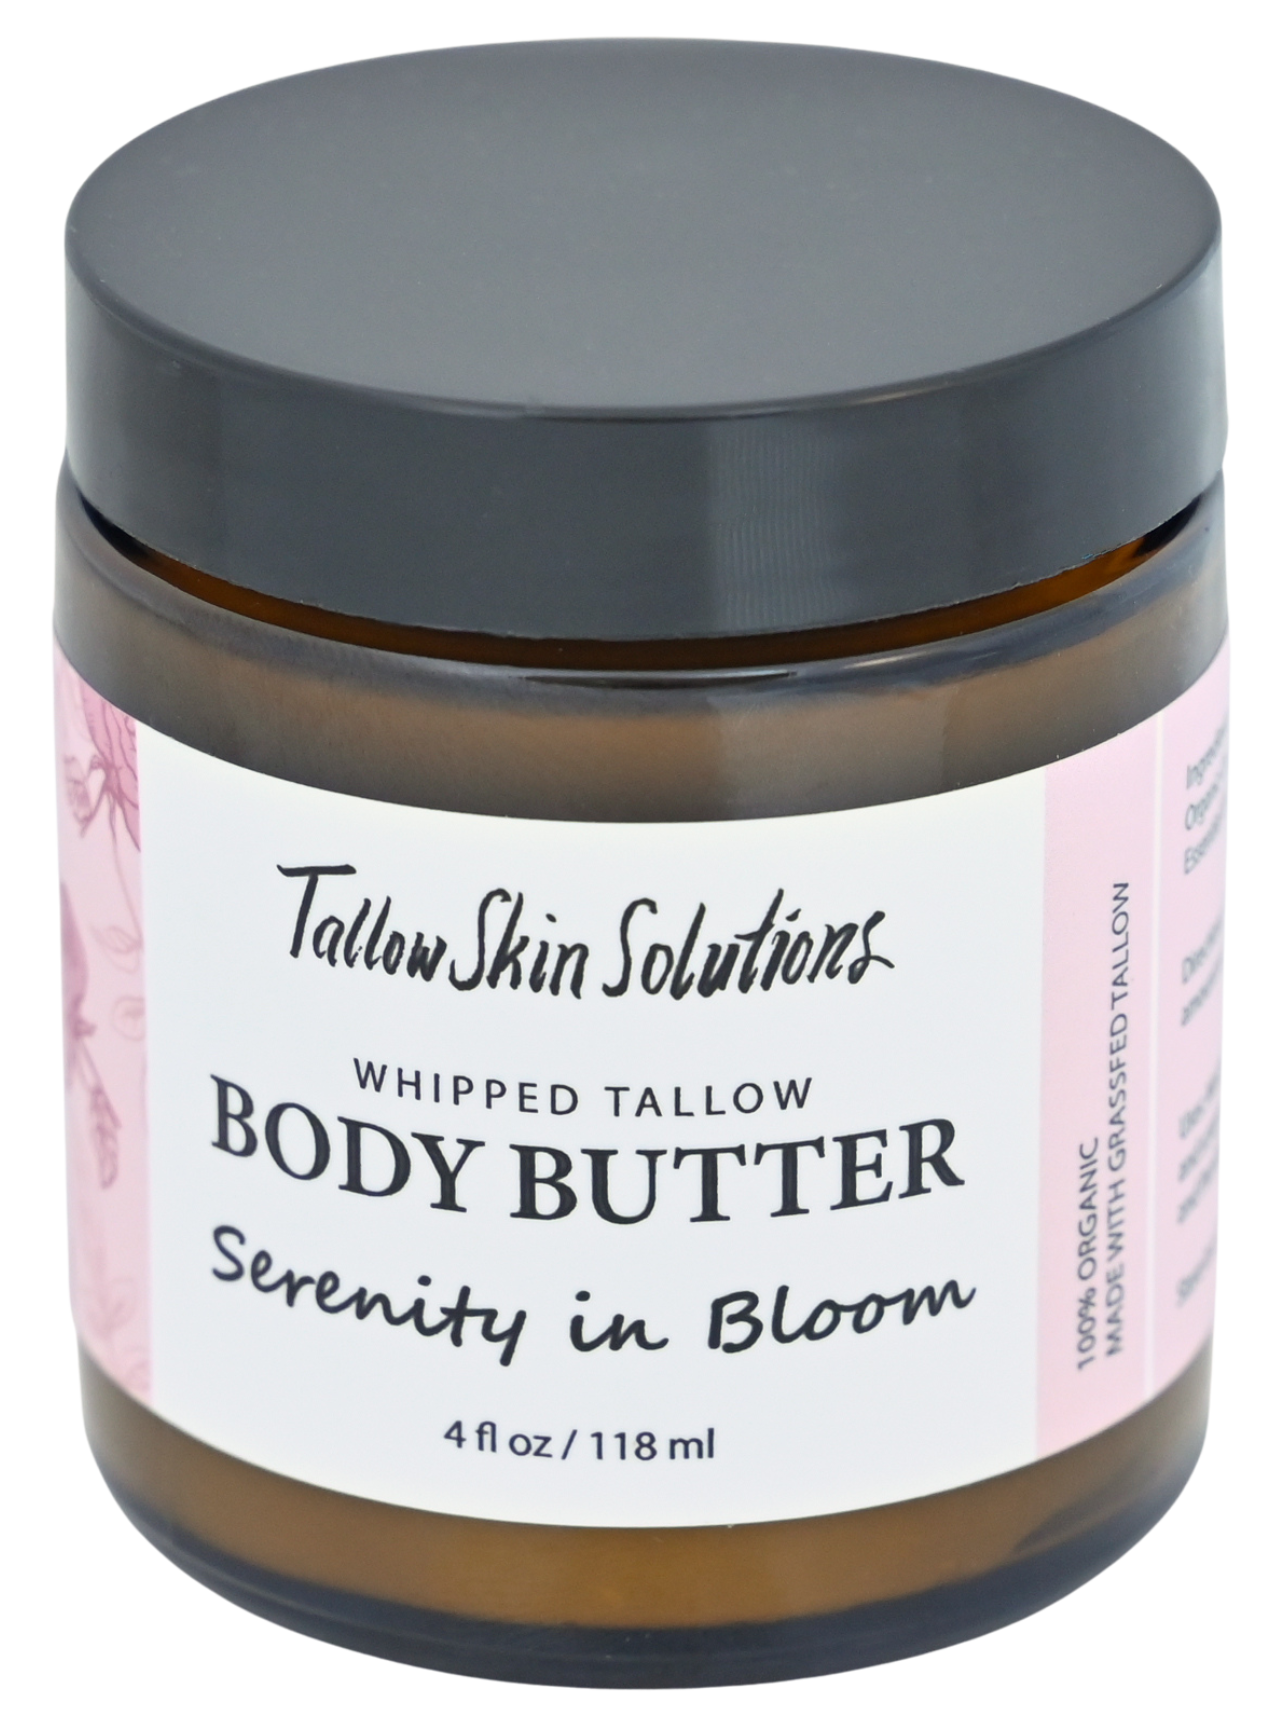 Tallow Body Butter